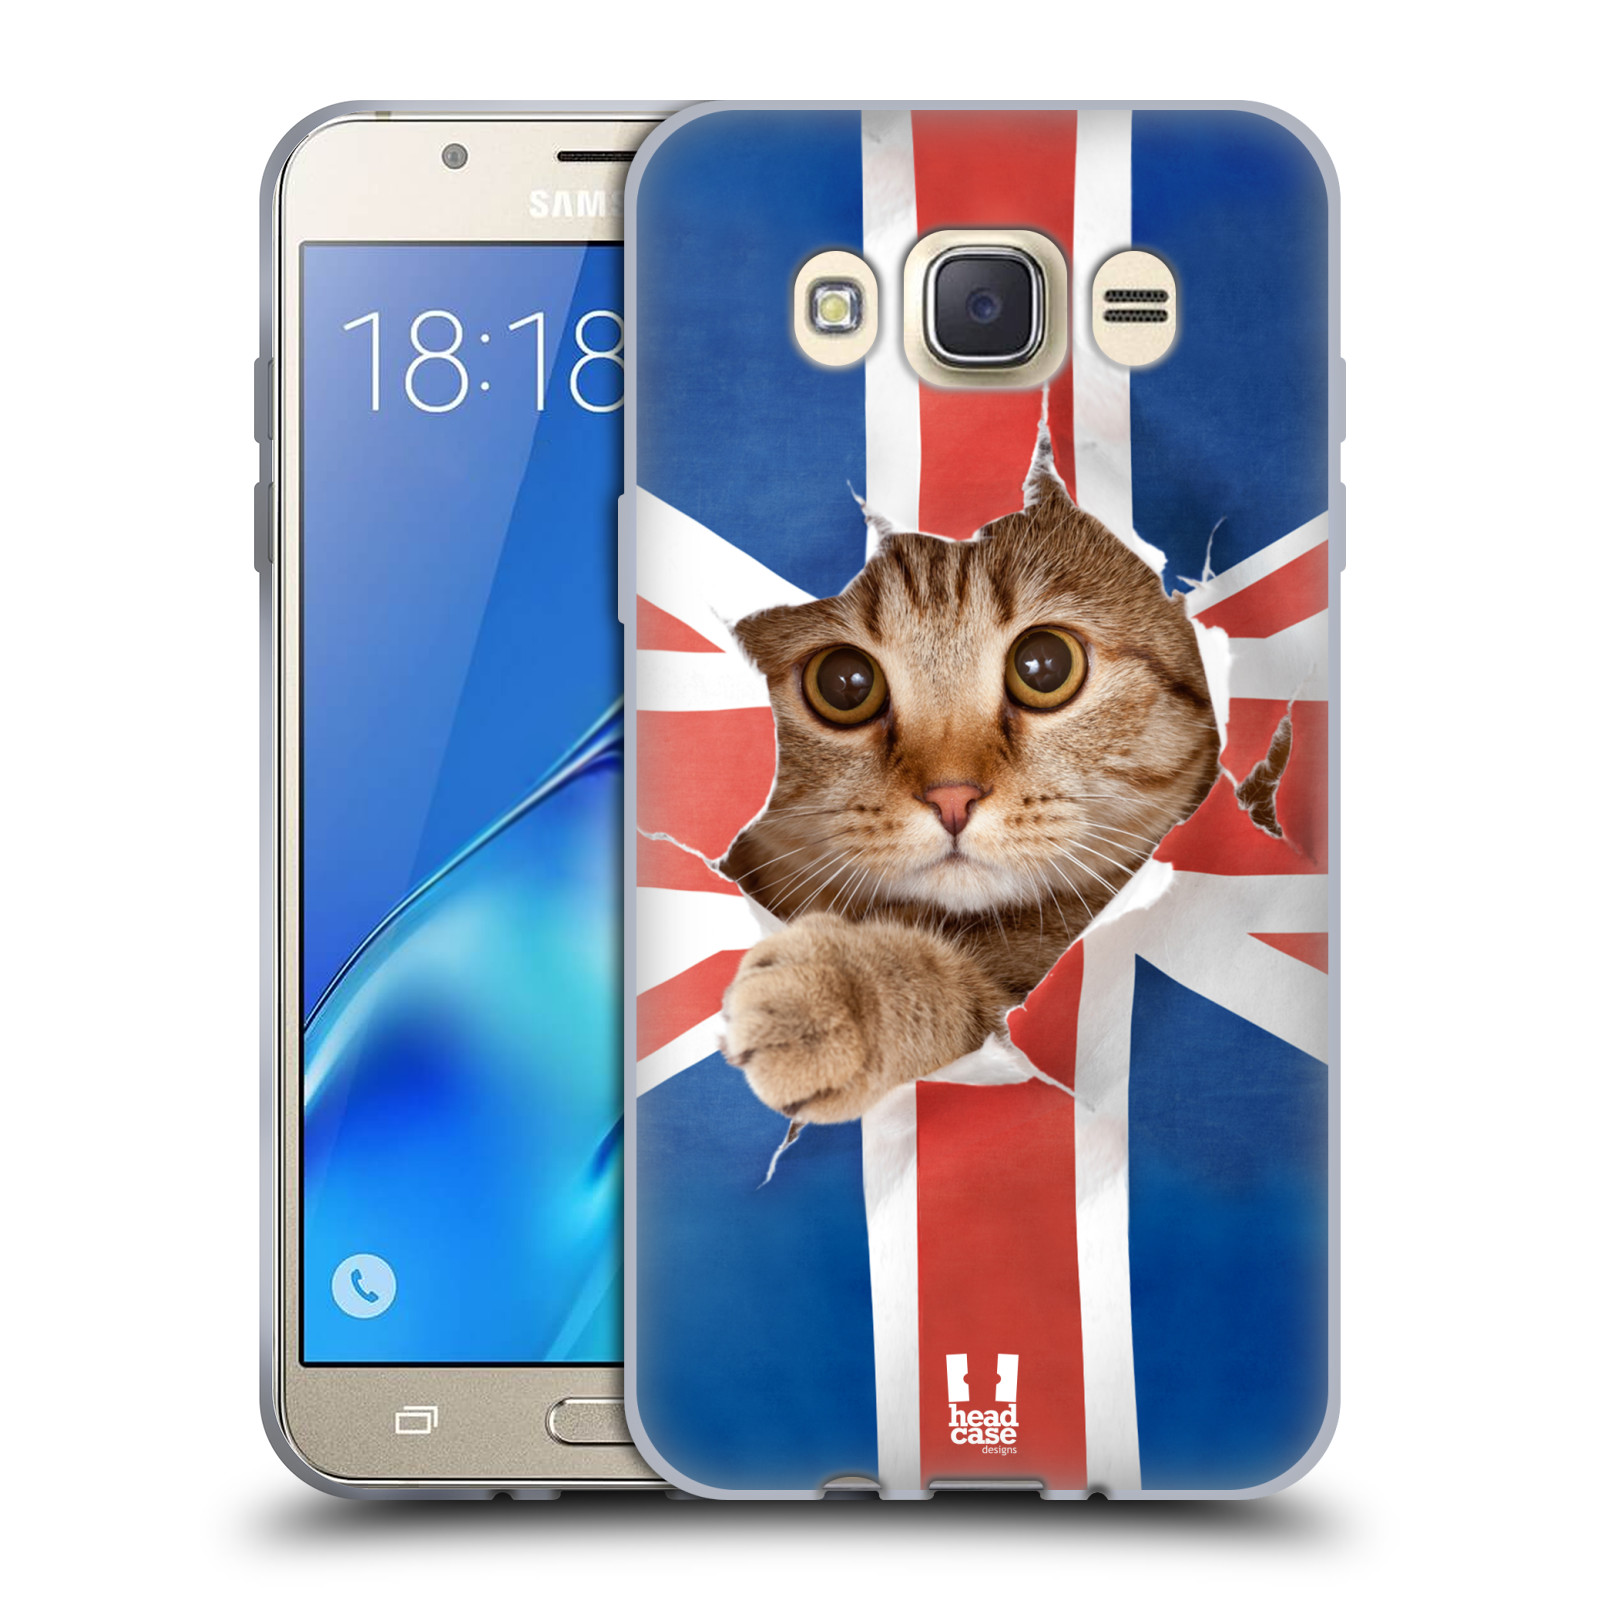 HEAD CASE silikonový obal, kryt na mobil Samsung Galaxy J7 2016 (J710, J710F) vzor Legrační zvířátka kočička a Velká Británie vlajka